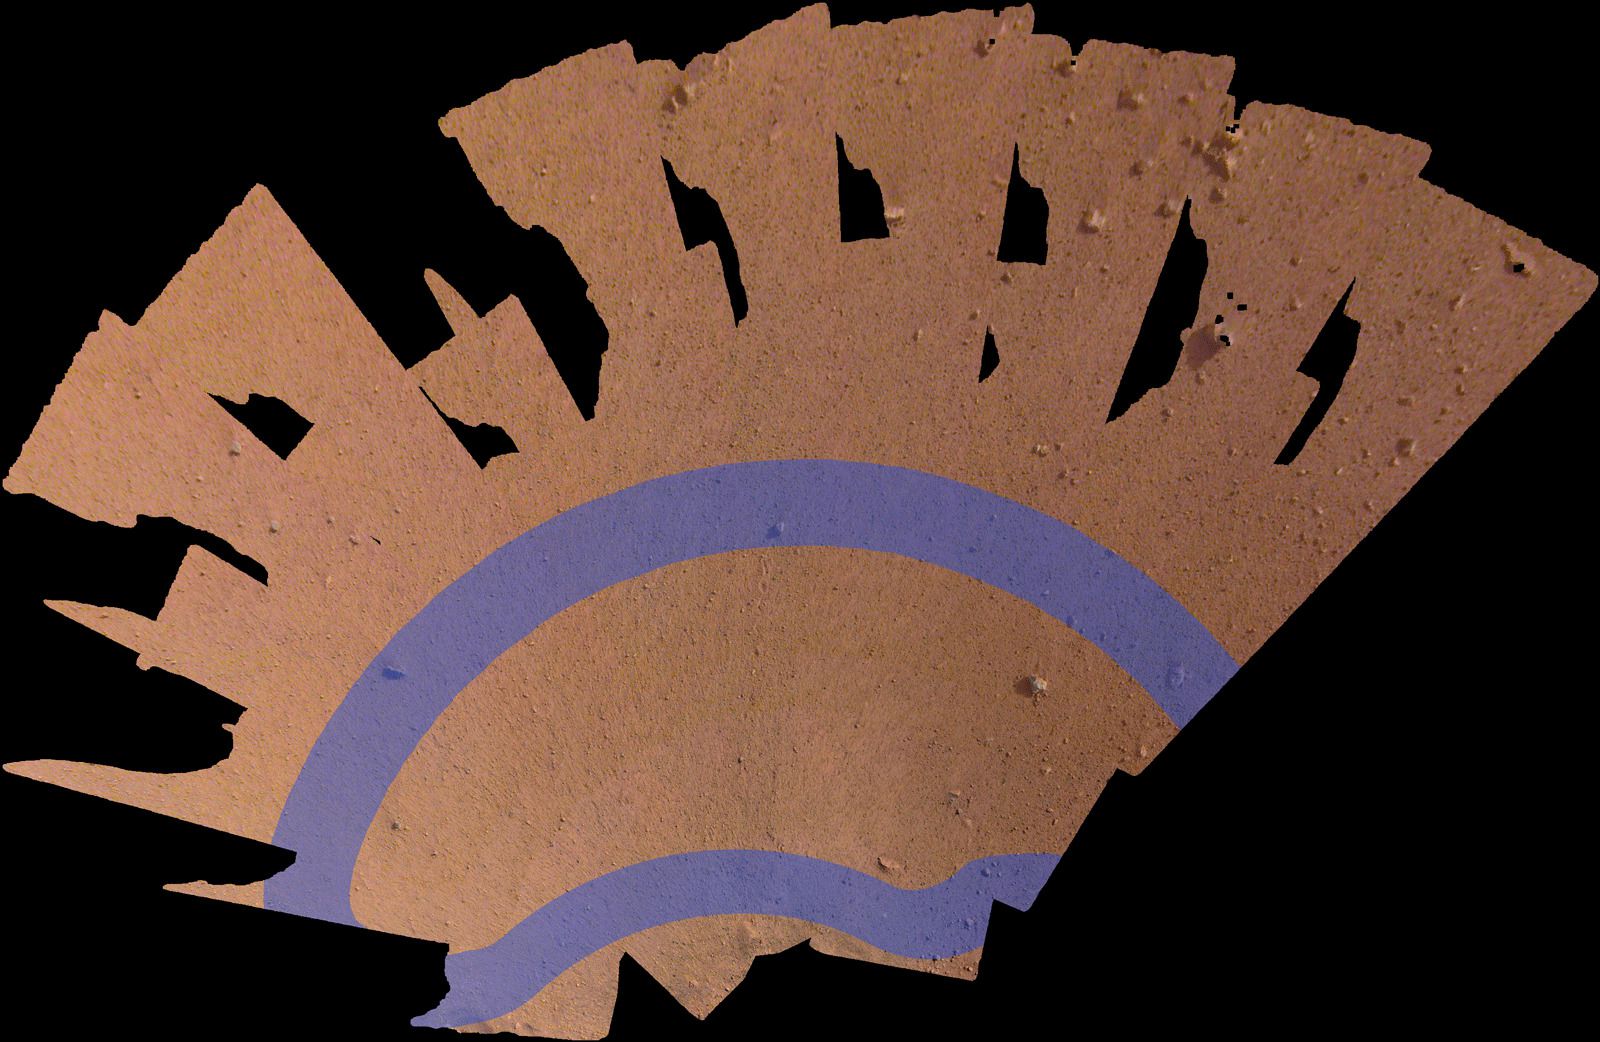 Місцерозташування зонду InSight розгледіли з орбіти. Орбітальний апарат Mars Reconnaissance Orbiter зміг сфотографувати посадочну платформу місії InSight, теплозахисний екран і парашут.